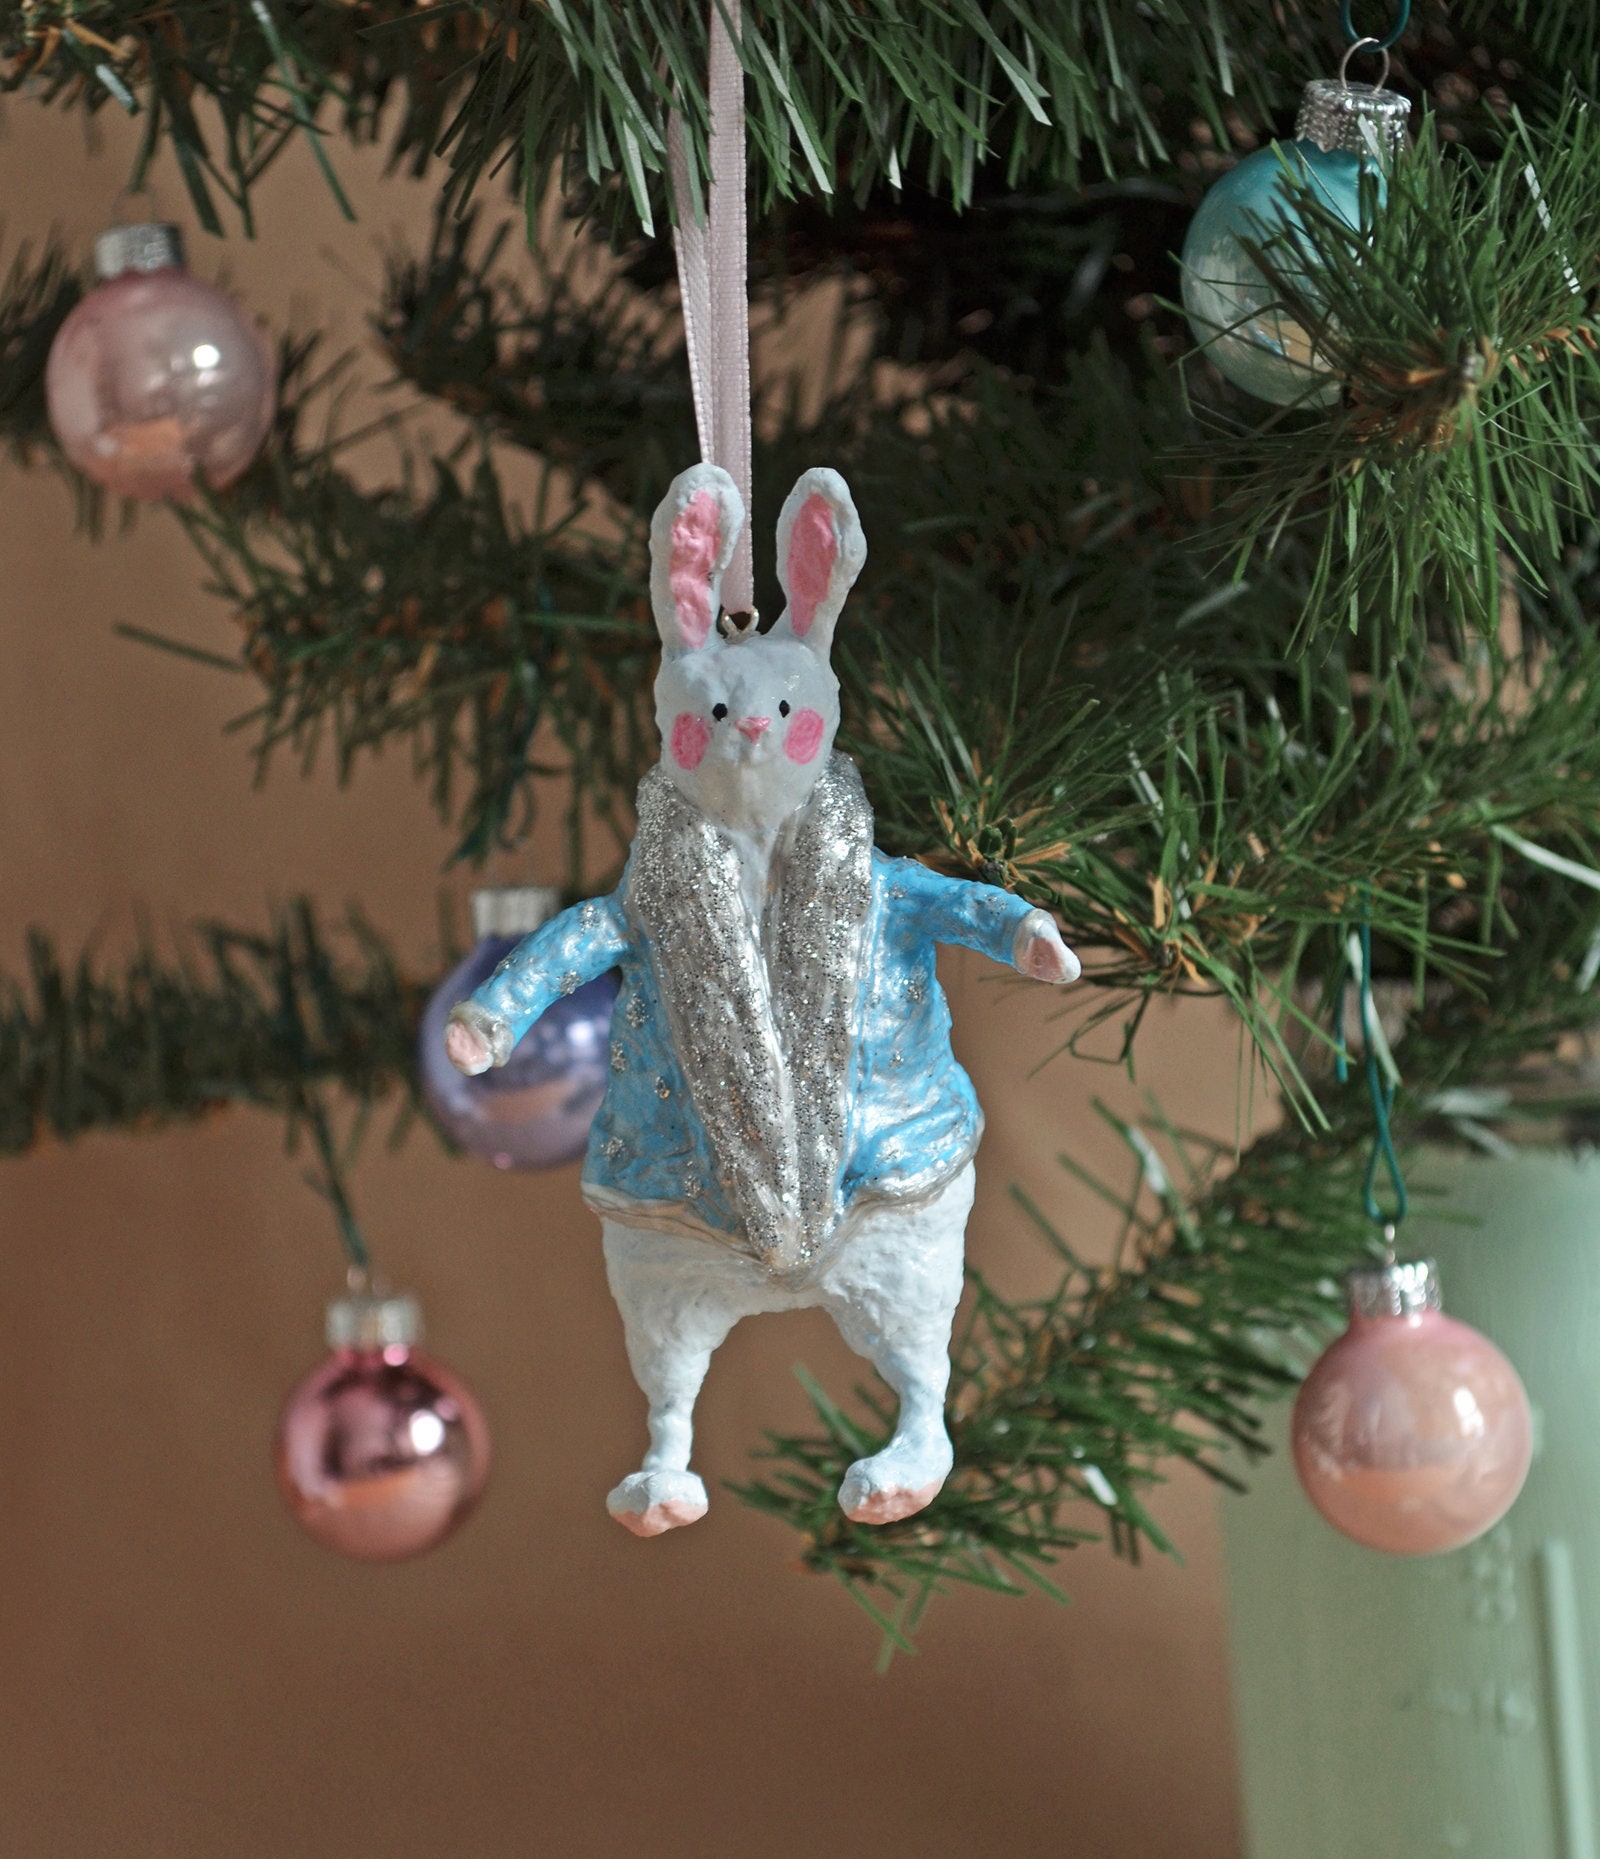 Set Christmas tree ornaments Spun cotton Vintage style Handmade Christmas decor Christmas 2021